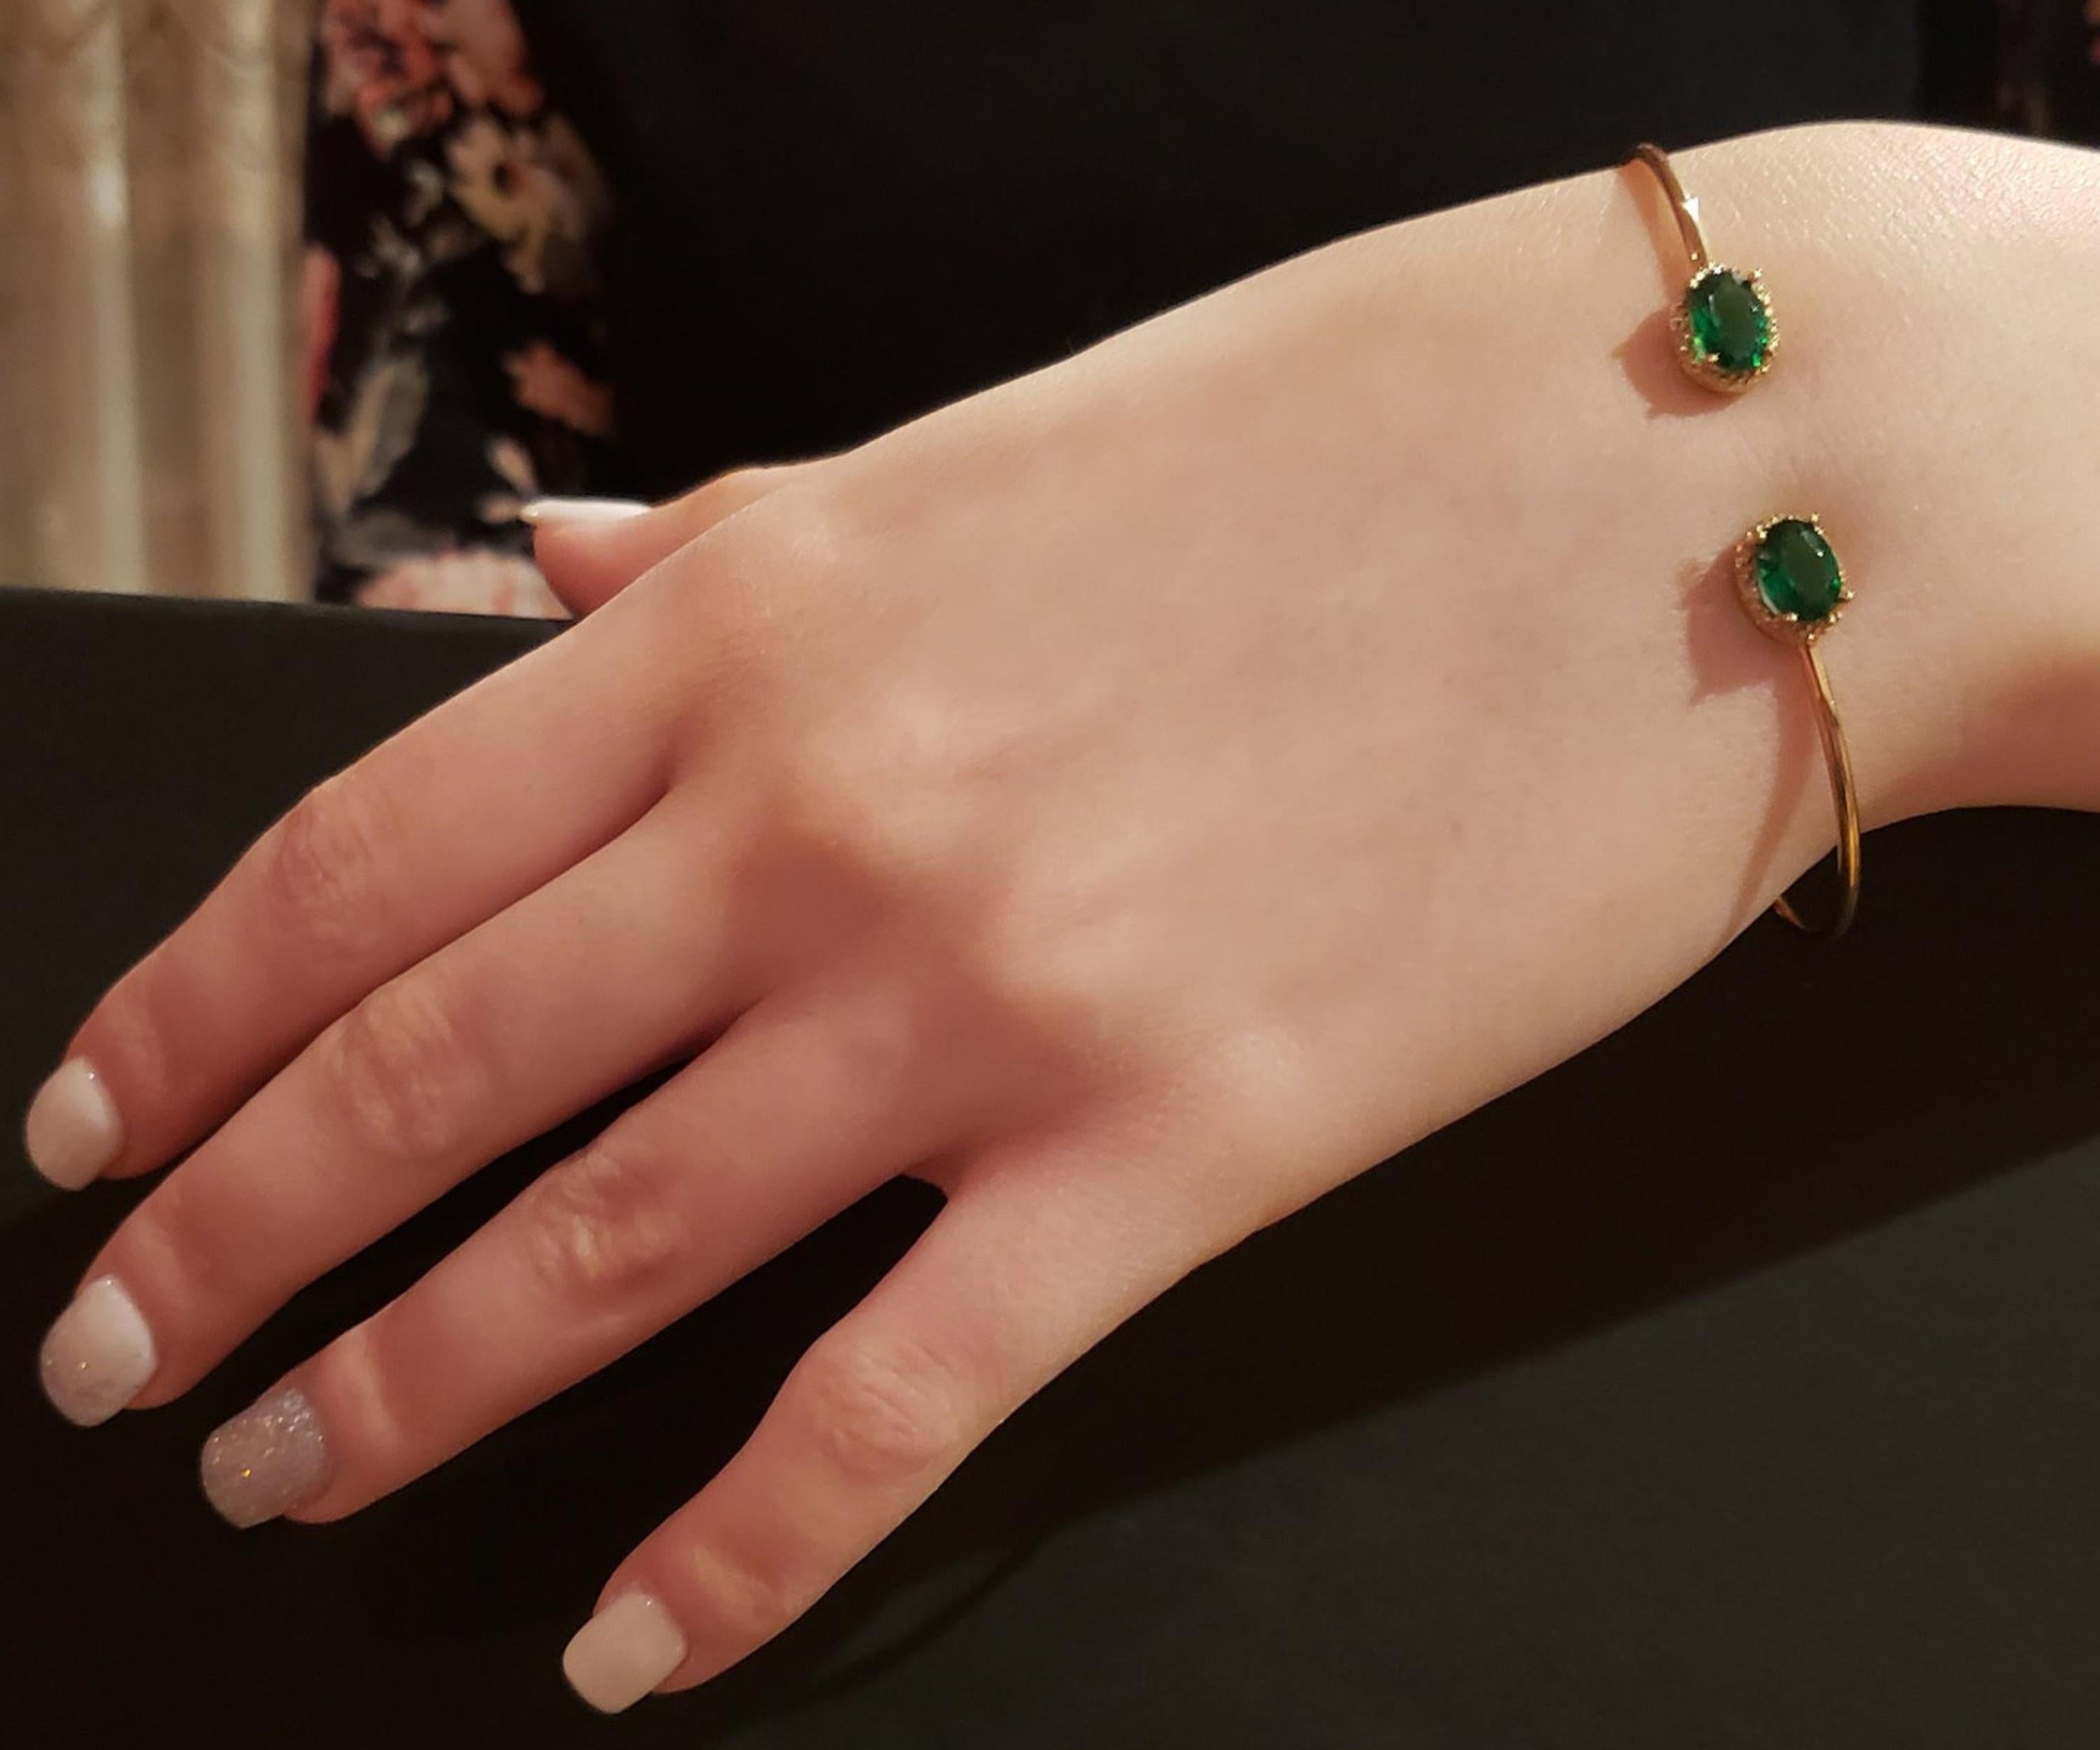 14Kt Gold Emerald & Diamond Oval Bangle Bracelet